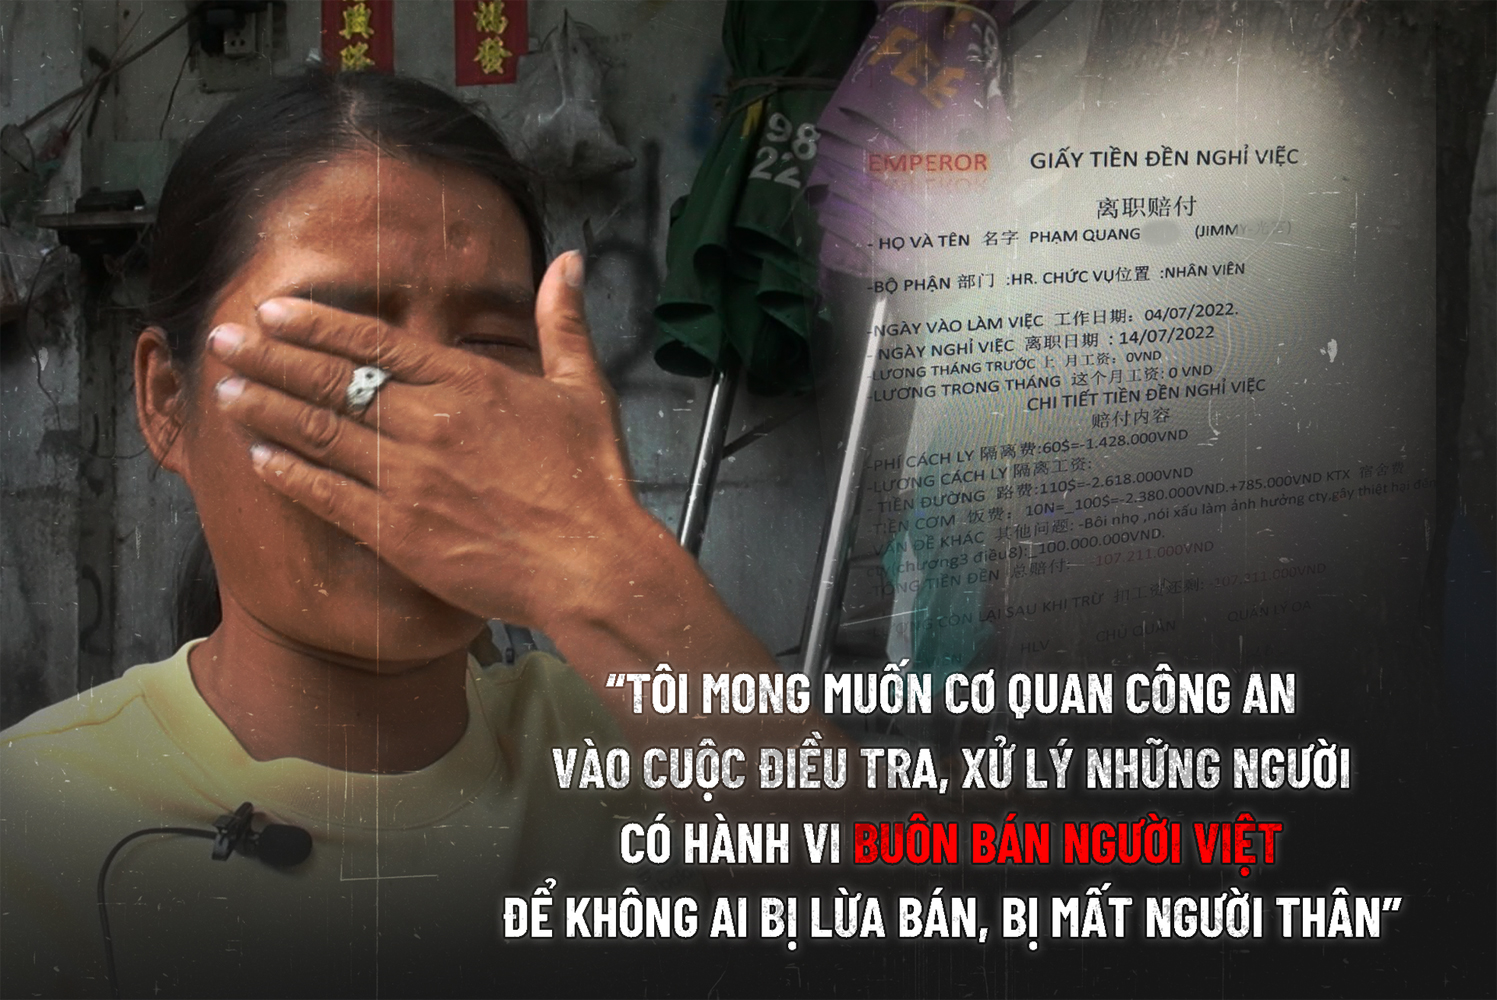 Bé gái 13 tuổi bị lừa bán sang Campuchia - 39